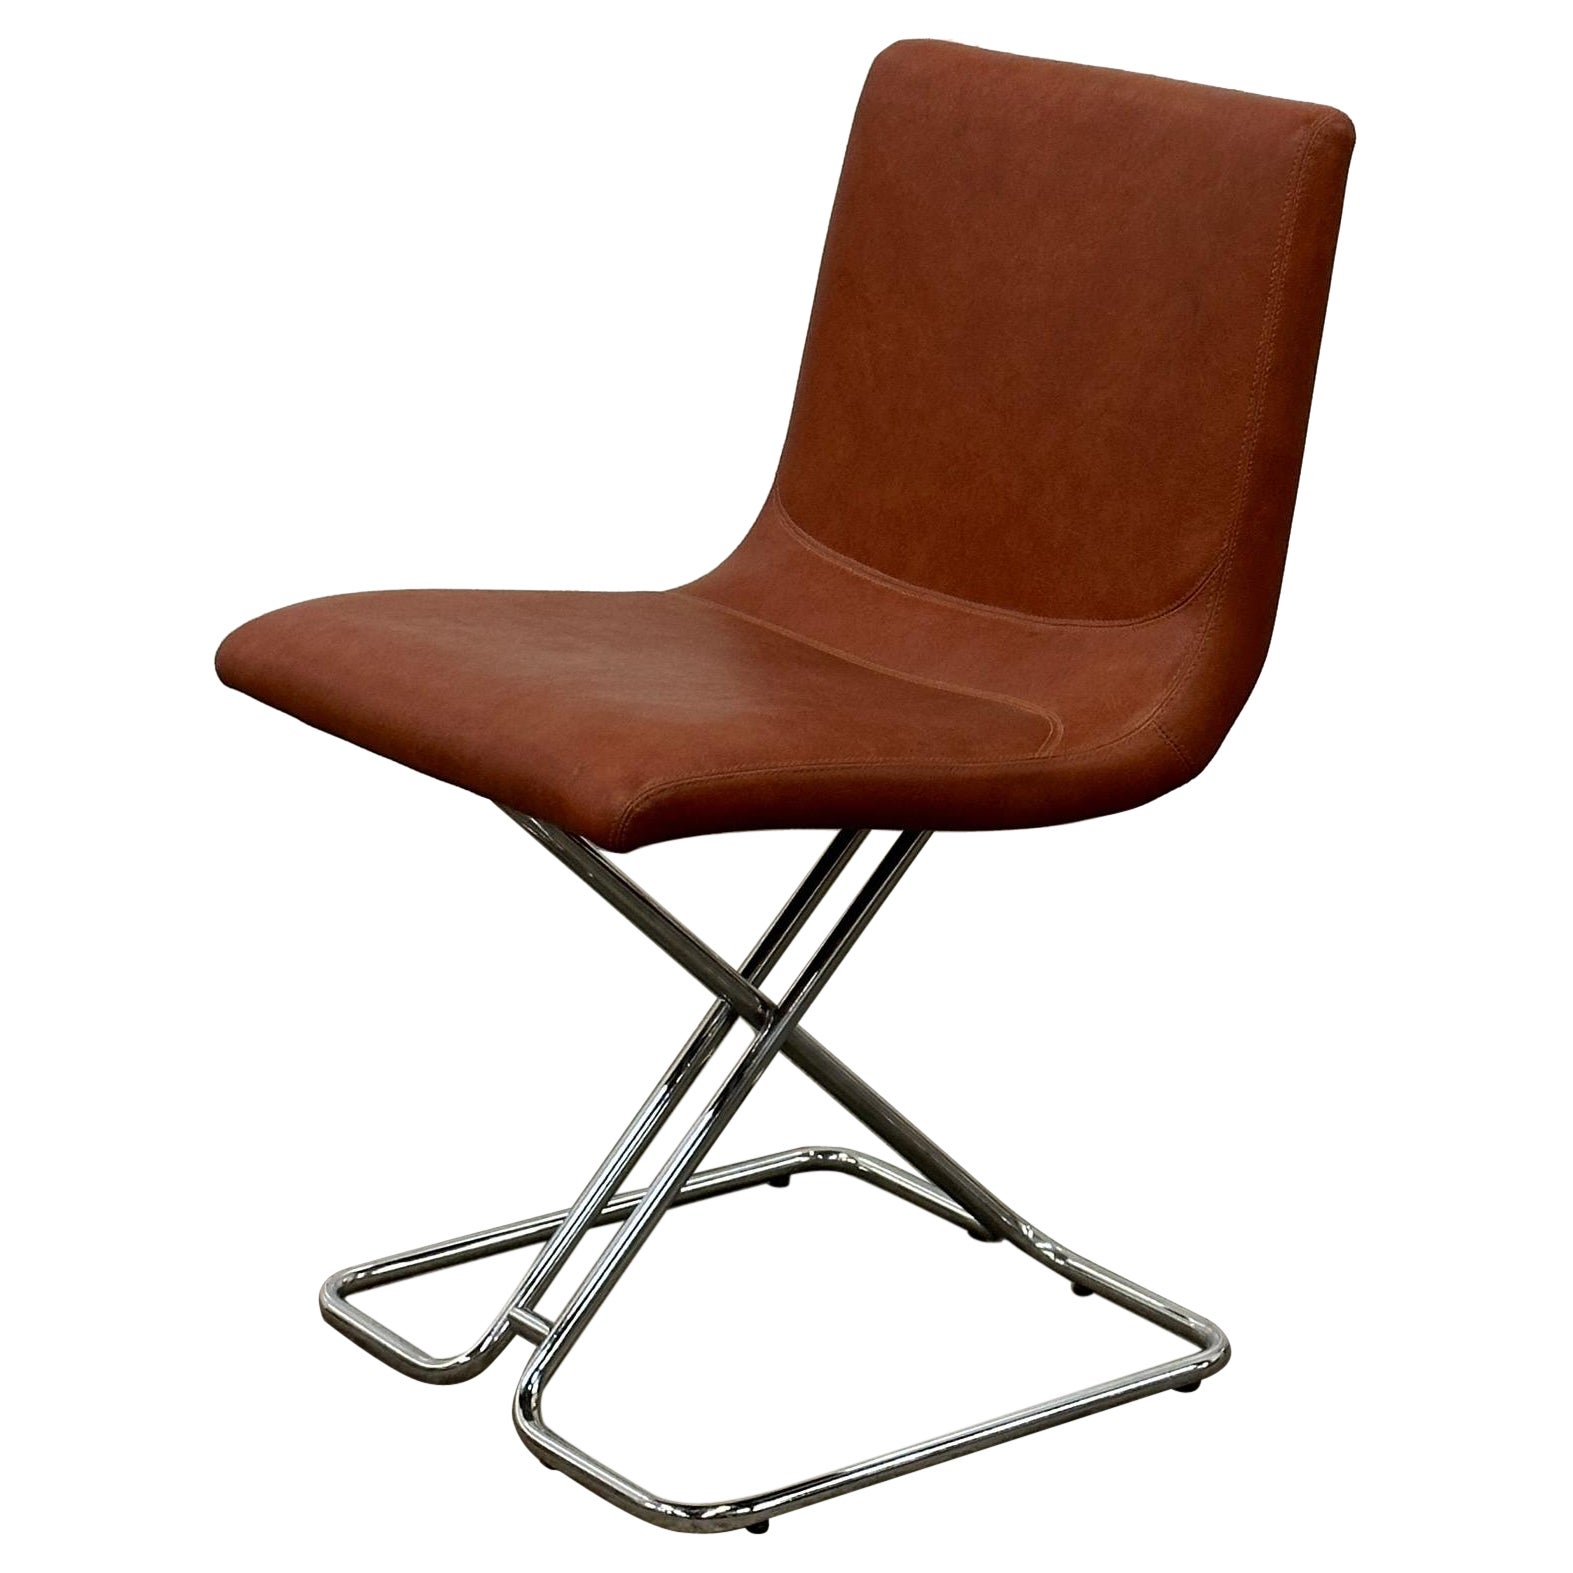 Vintage Italian Chrome Chair For Sale